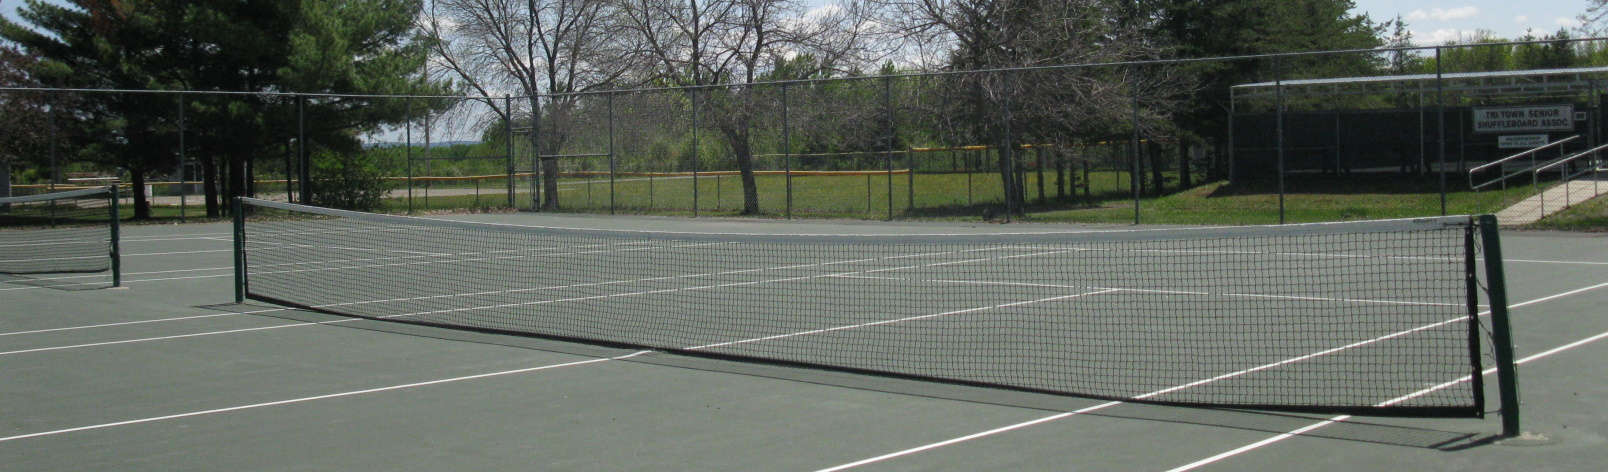 Tennis Court in Haileybury